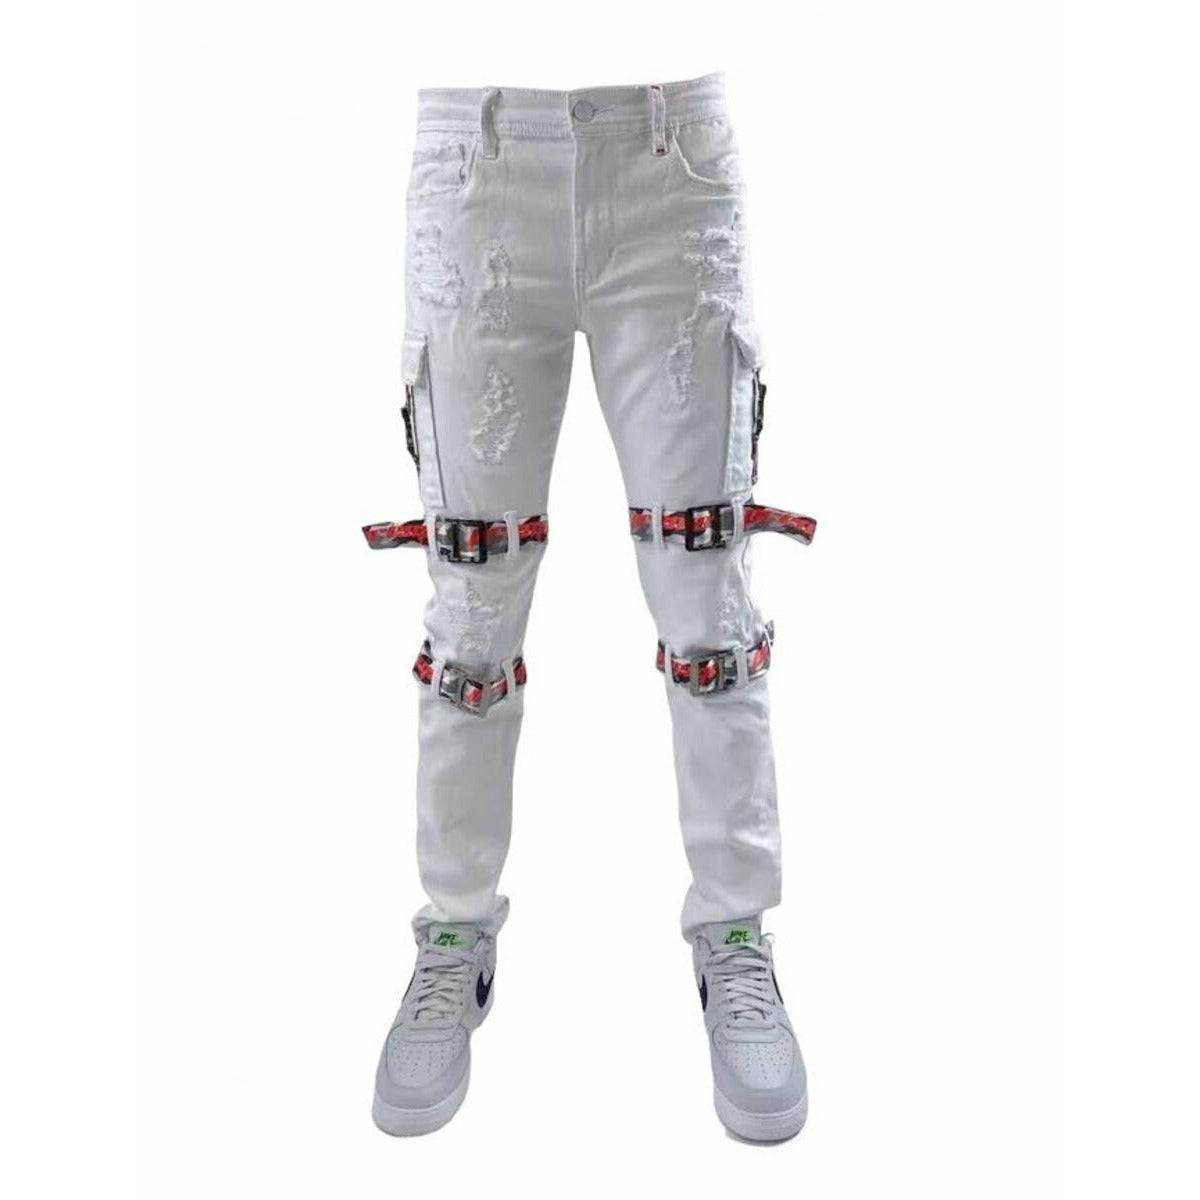 Preme Cargo Strap White Denim Jeans (PR-WB-799A)